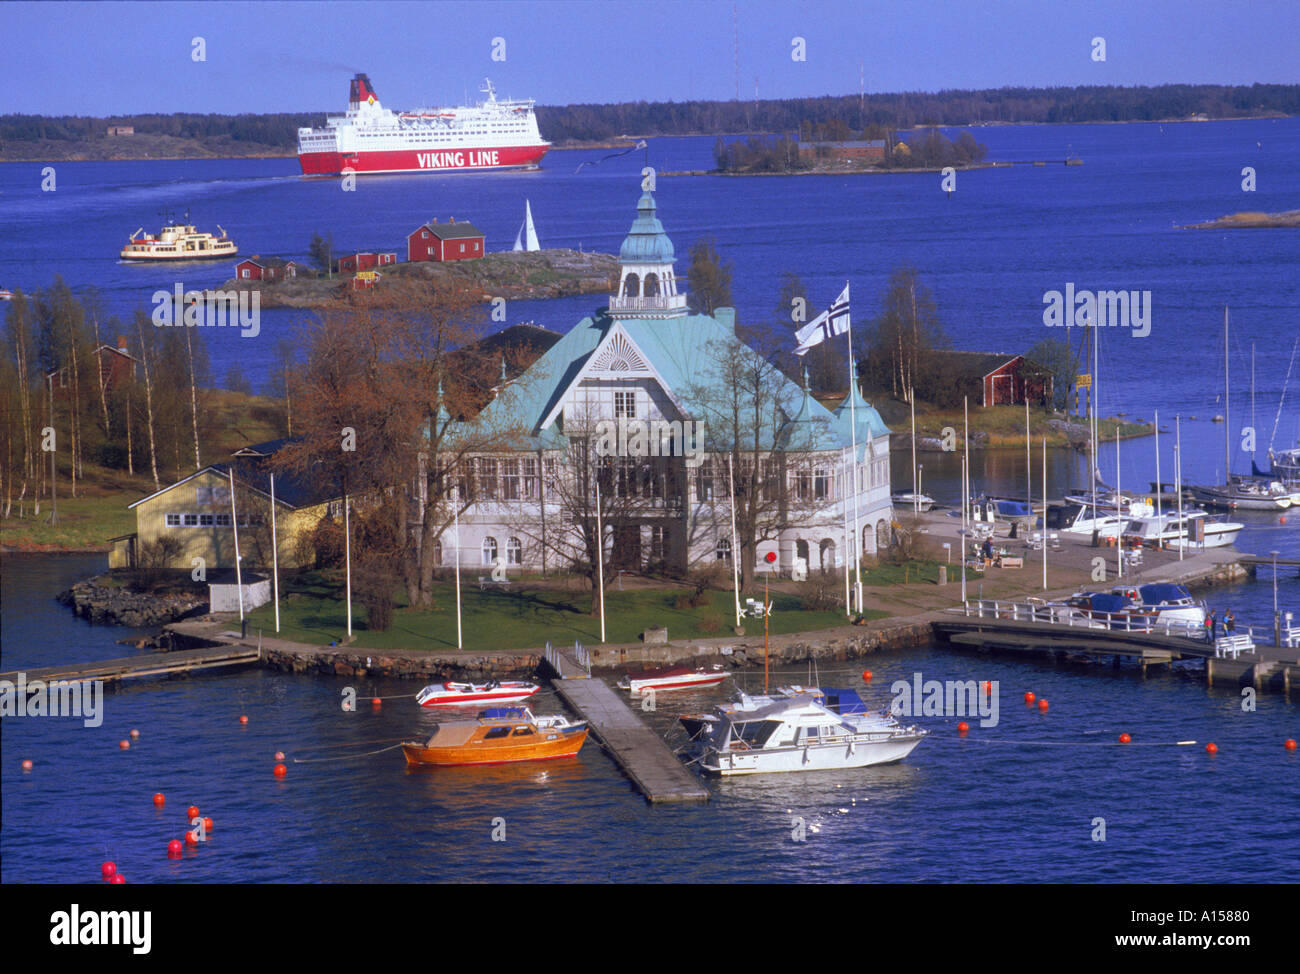 El puerto de yates de Valkosaari y un ferry Viking Line en el fondo en Helsinki, Finlandia K Gillham Foto de stock